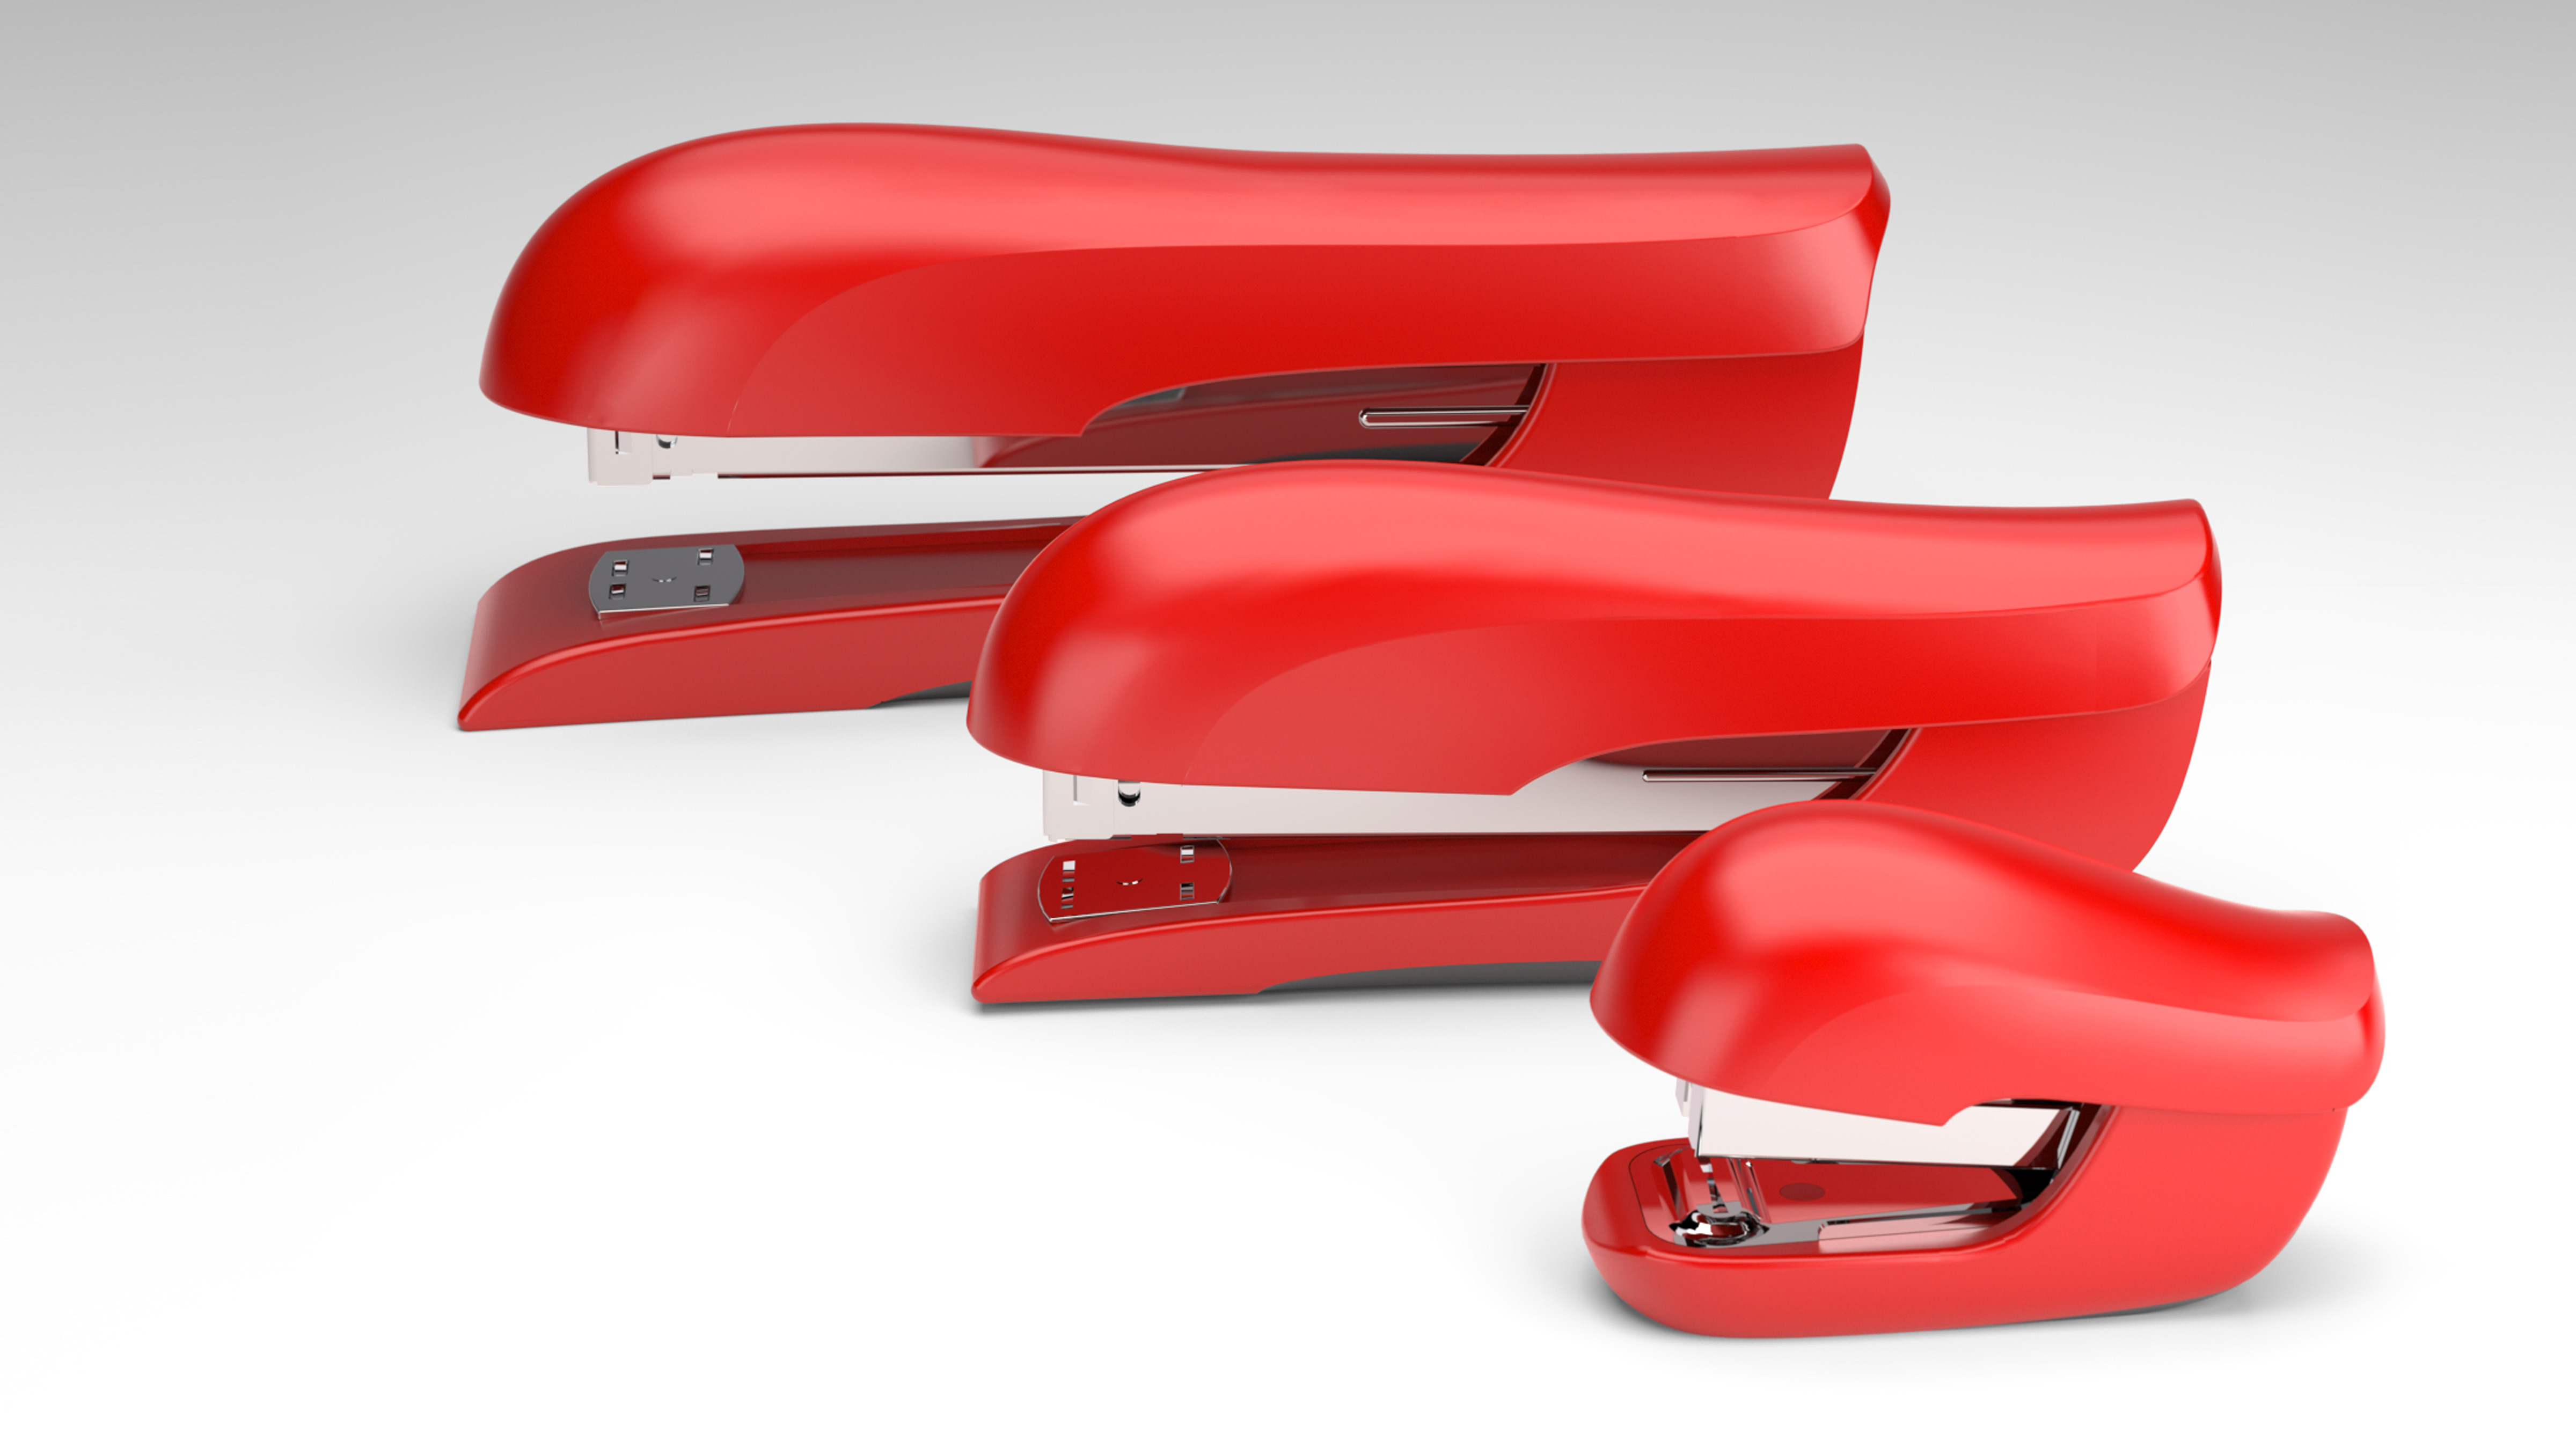 x acto stapler consumer product design 23